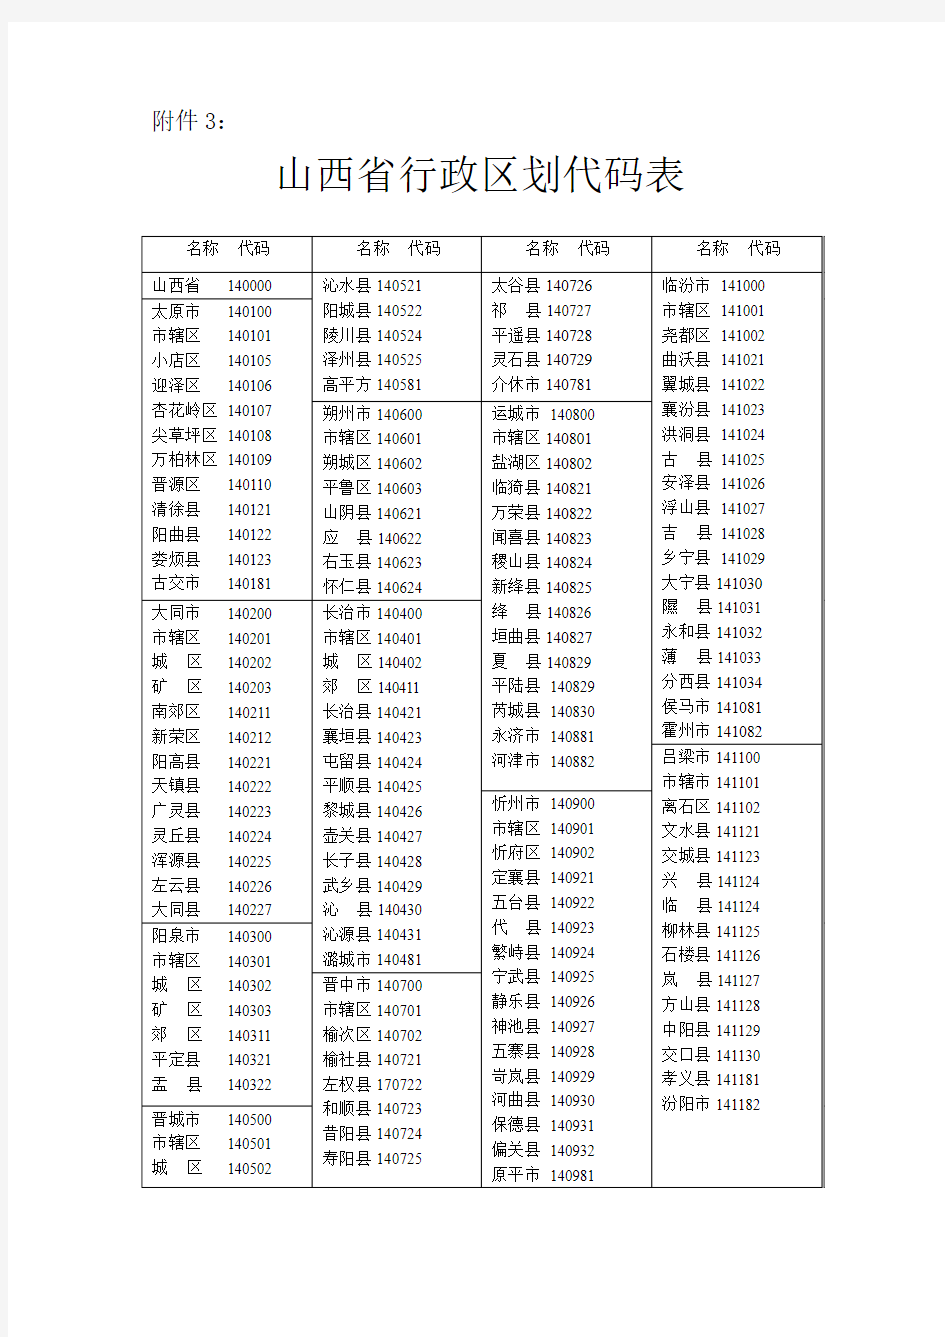 山西行政区划代码表